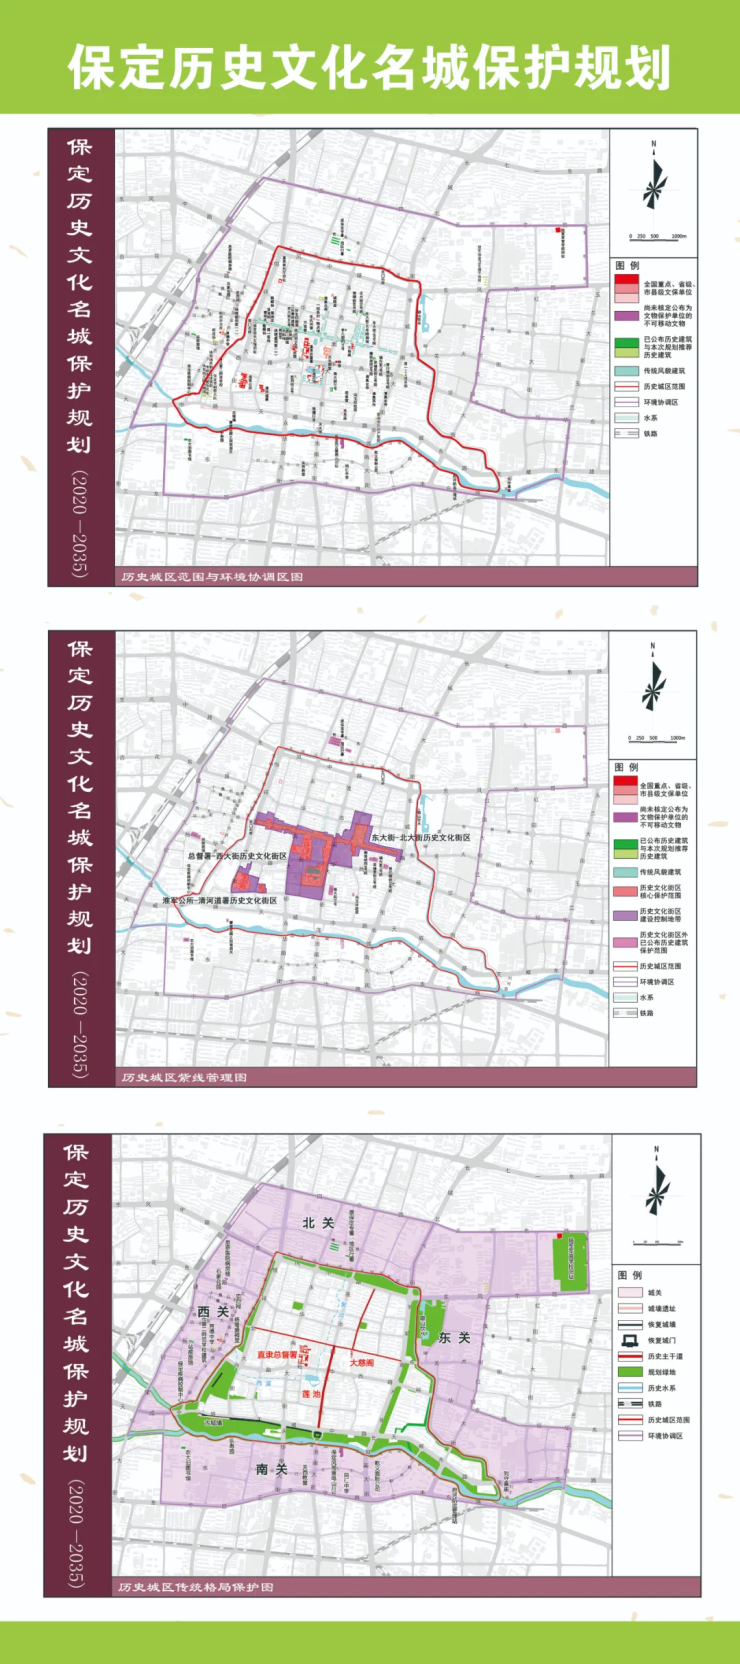 《保定市总体城市设计(2020-2035)》(草案)公布